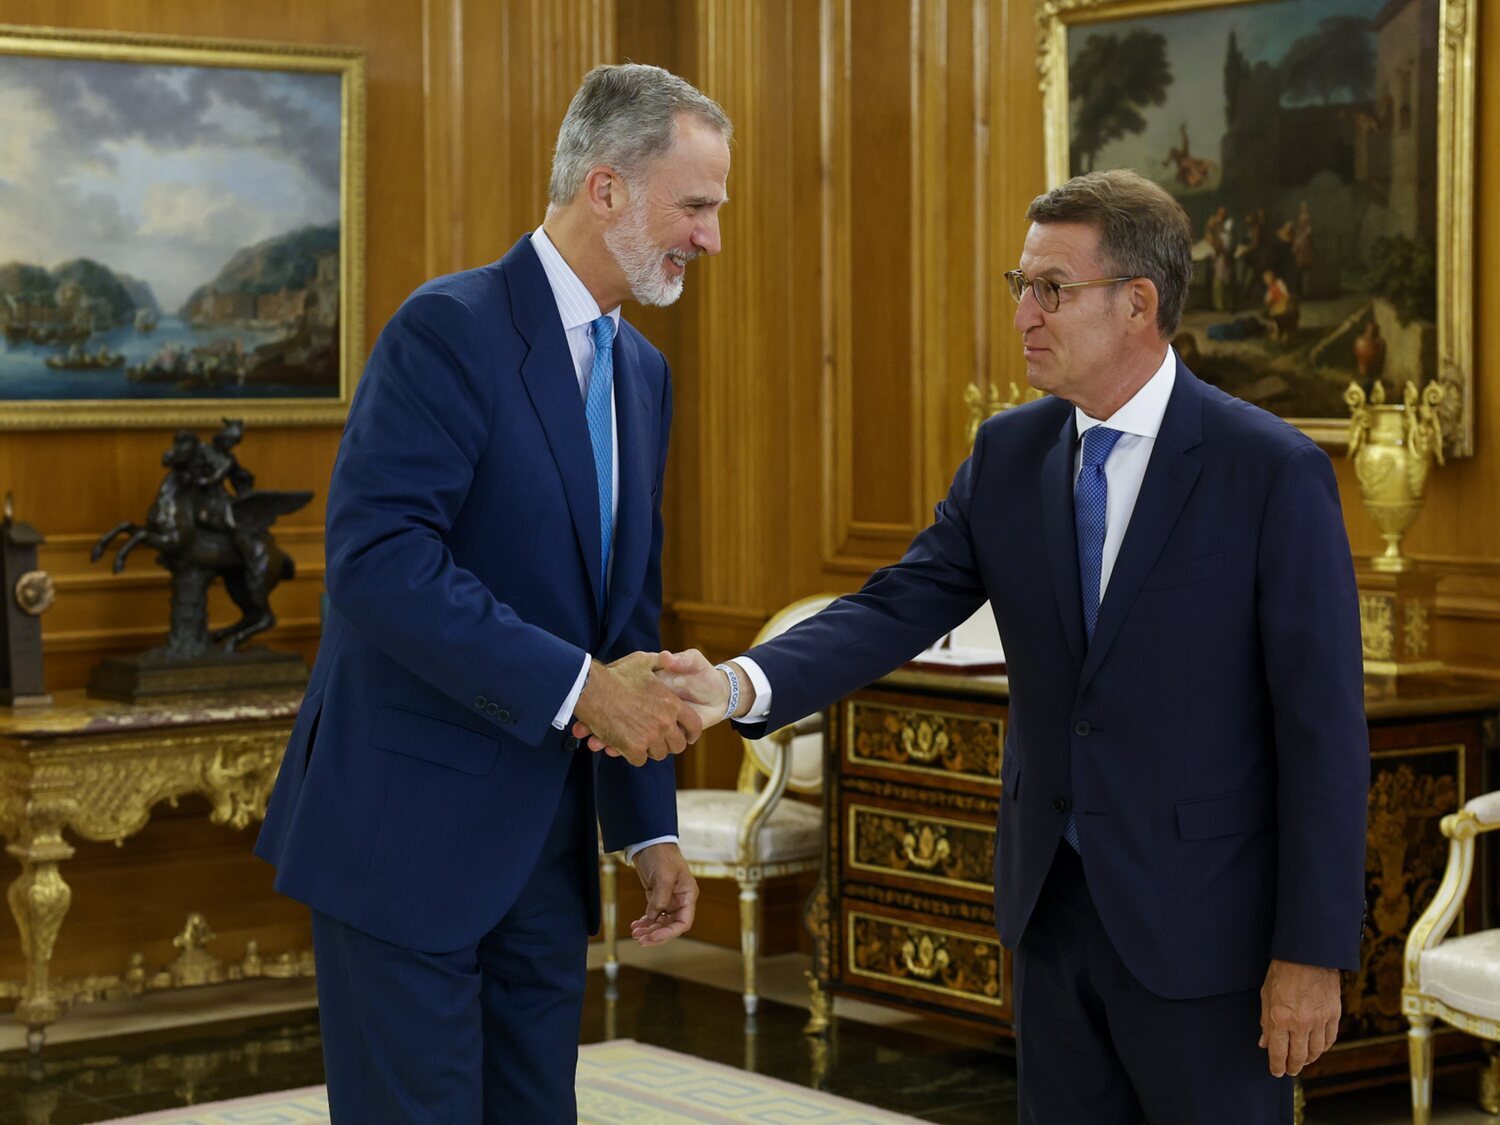 Por la "costumbre": Felipe VI nombra a Alberto Núñez Feijóo candidato a la investidura a pesar de no tener mayoría suficiente